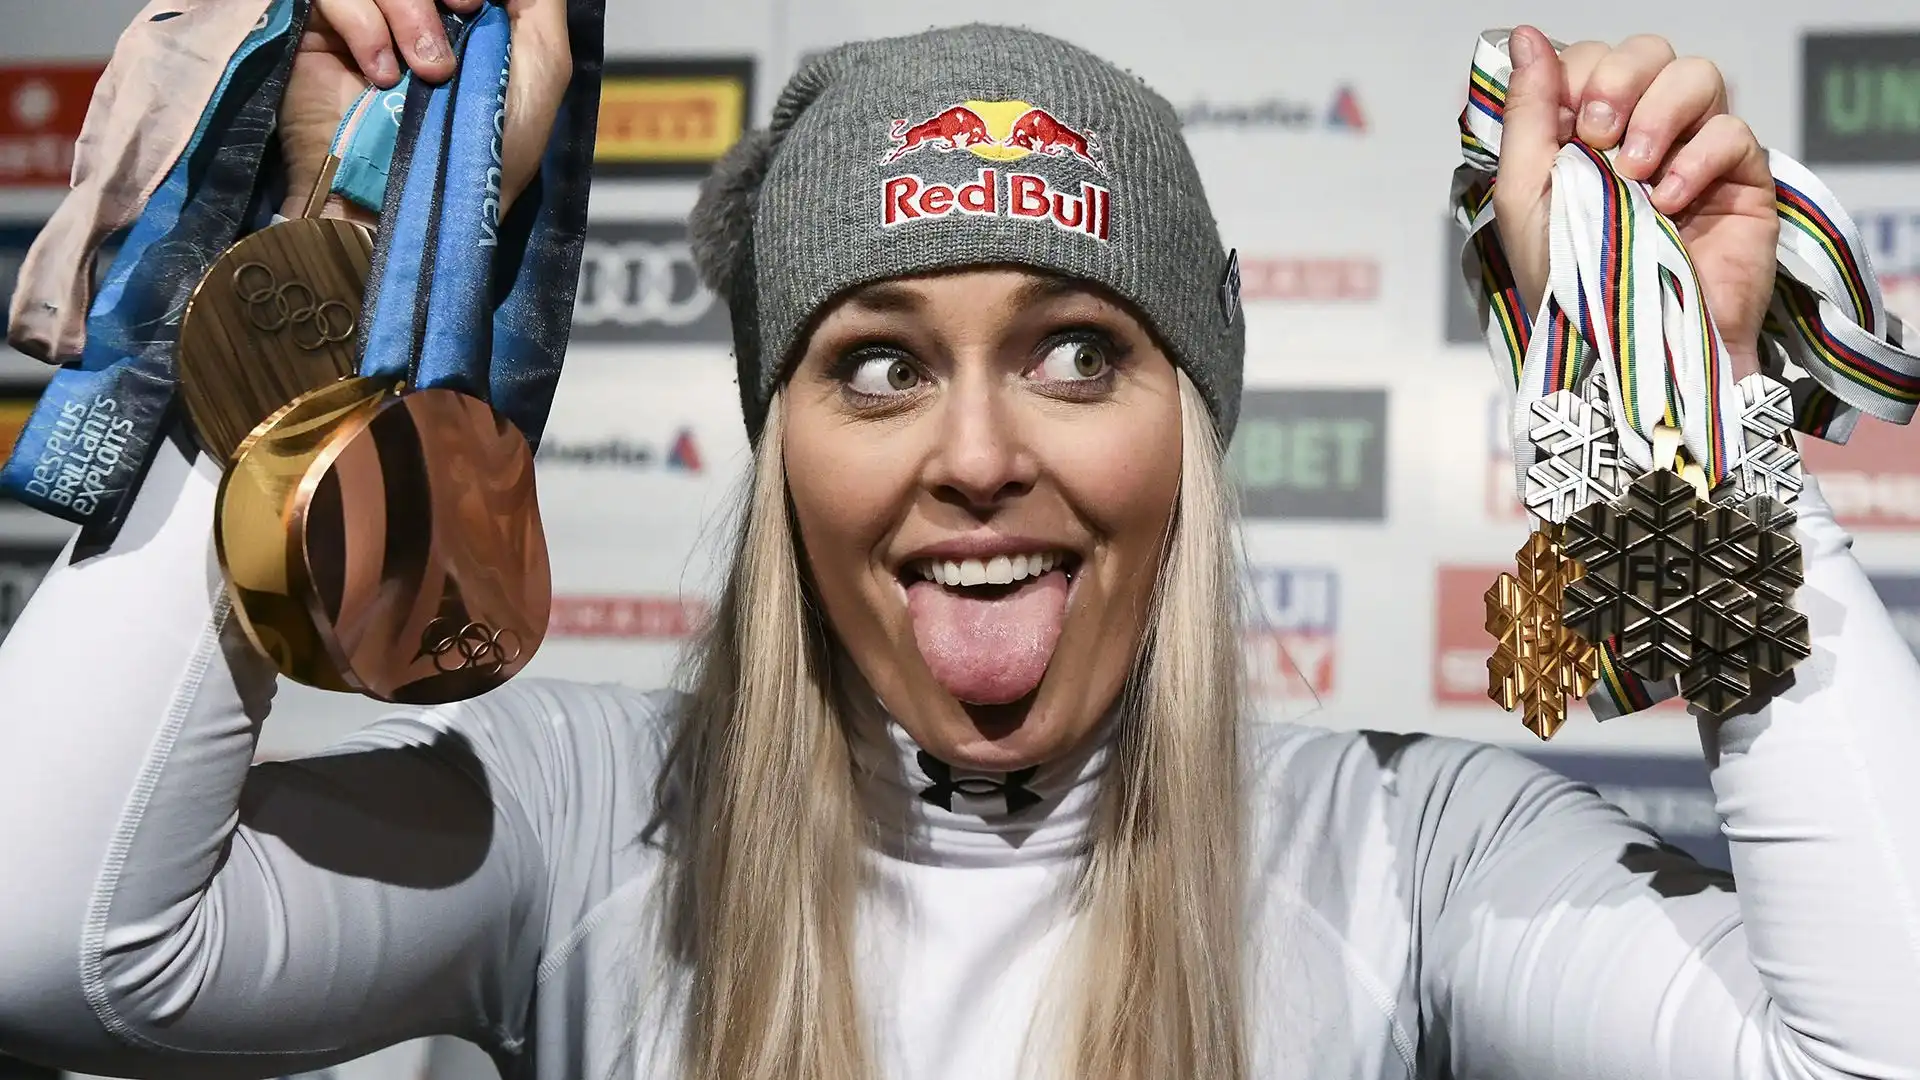 Lindsey Vonn (Stati Uniti): patrimonio stimato 12 milioni di dollari. La seconda sciatrice più vincente della storia